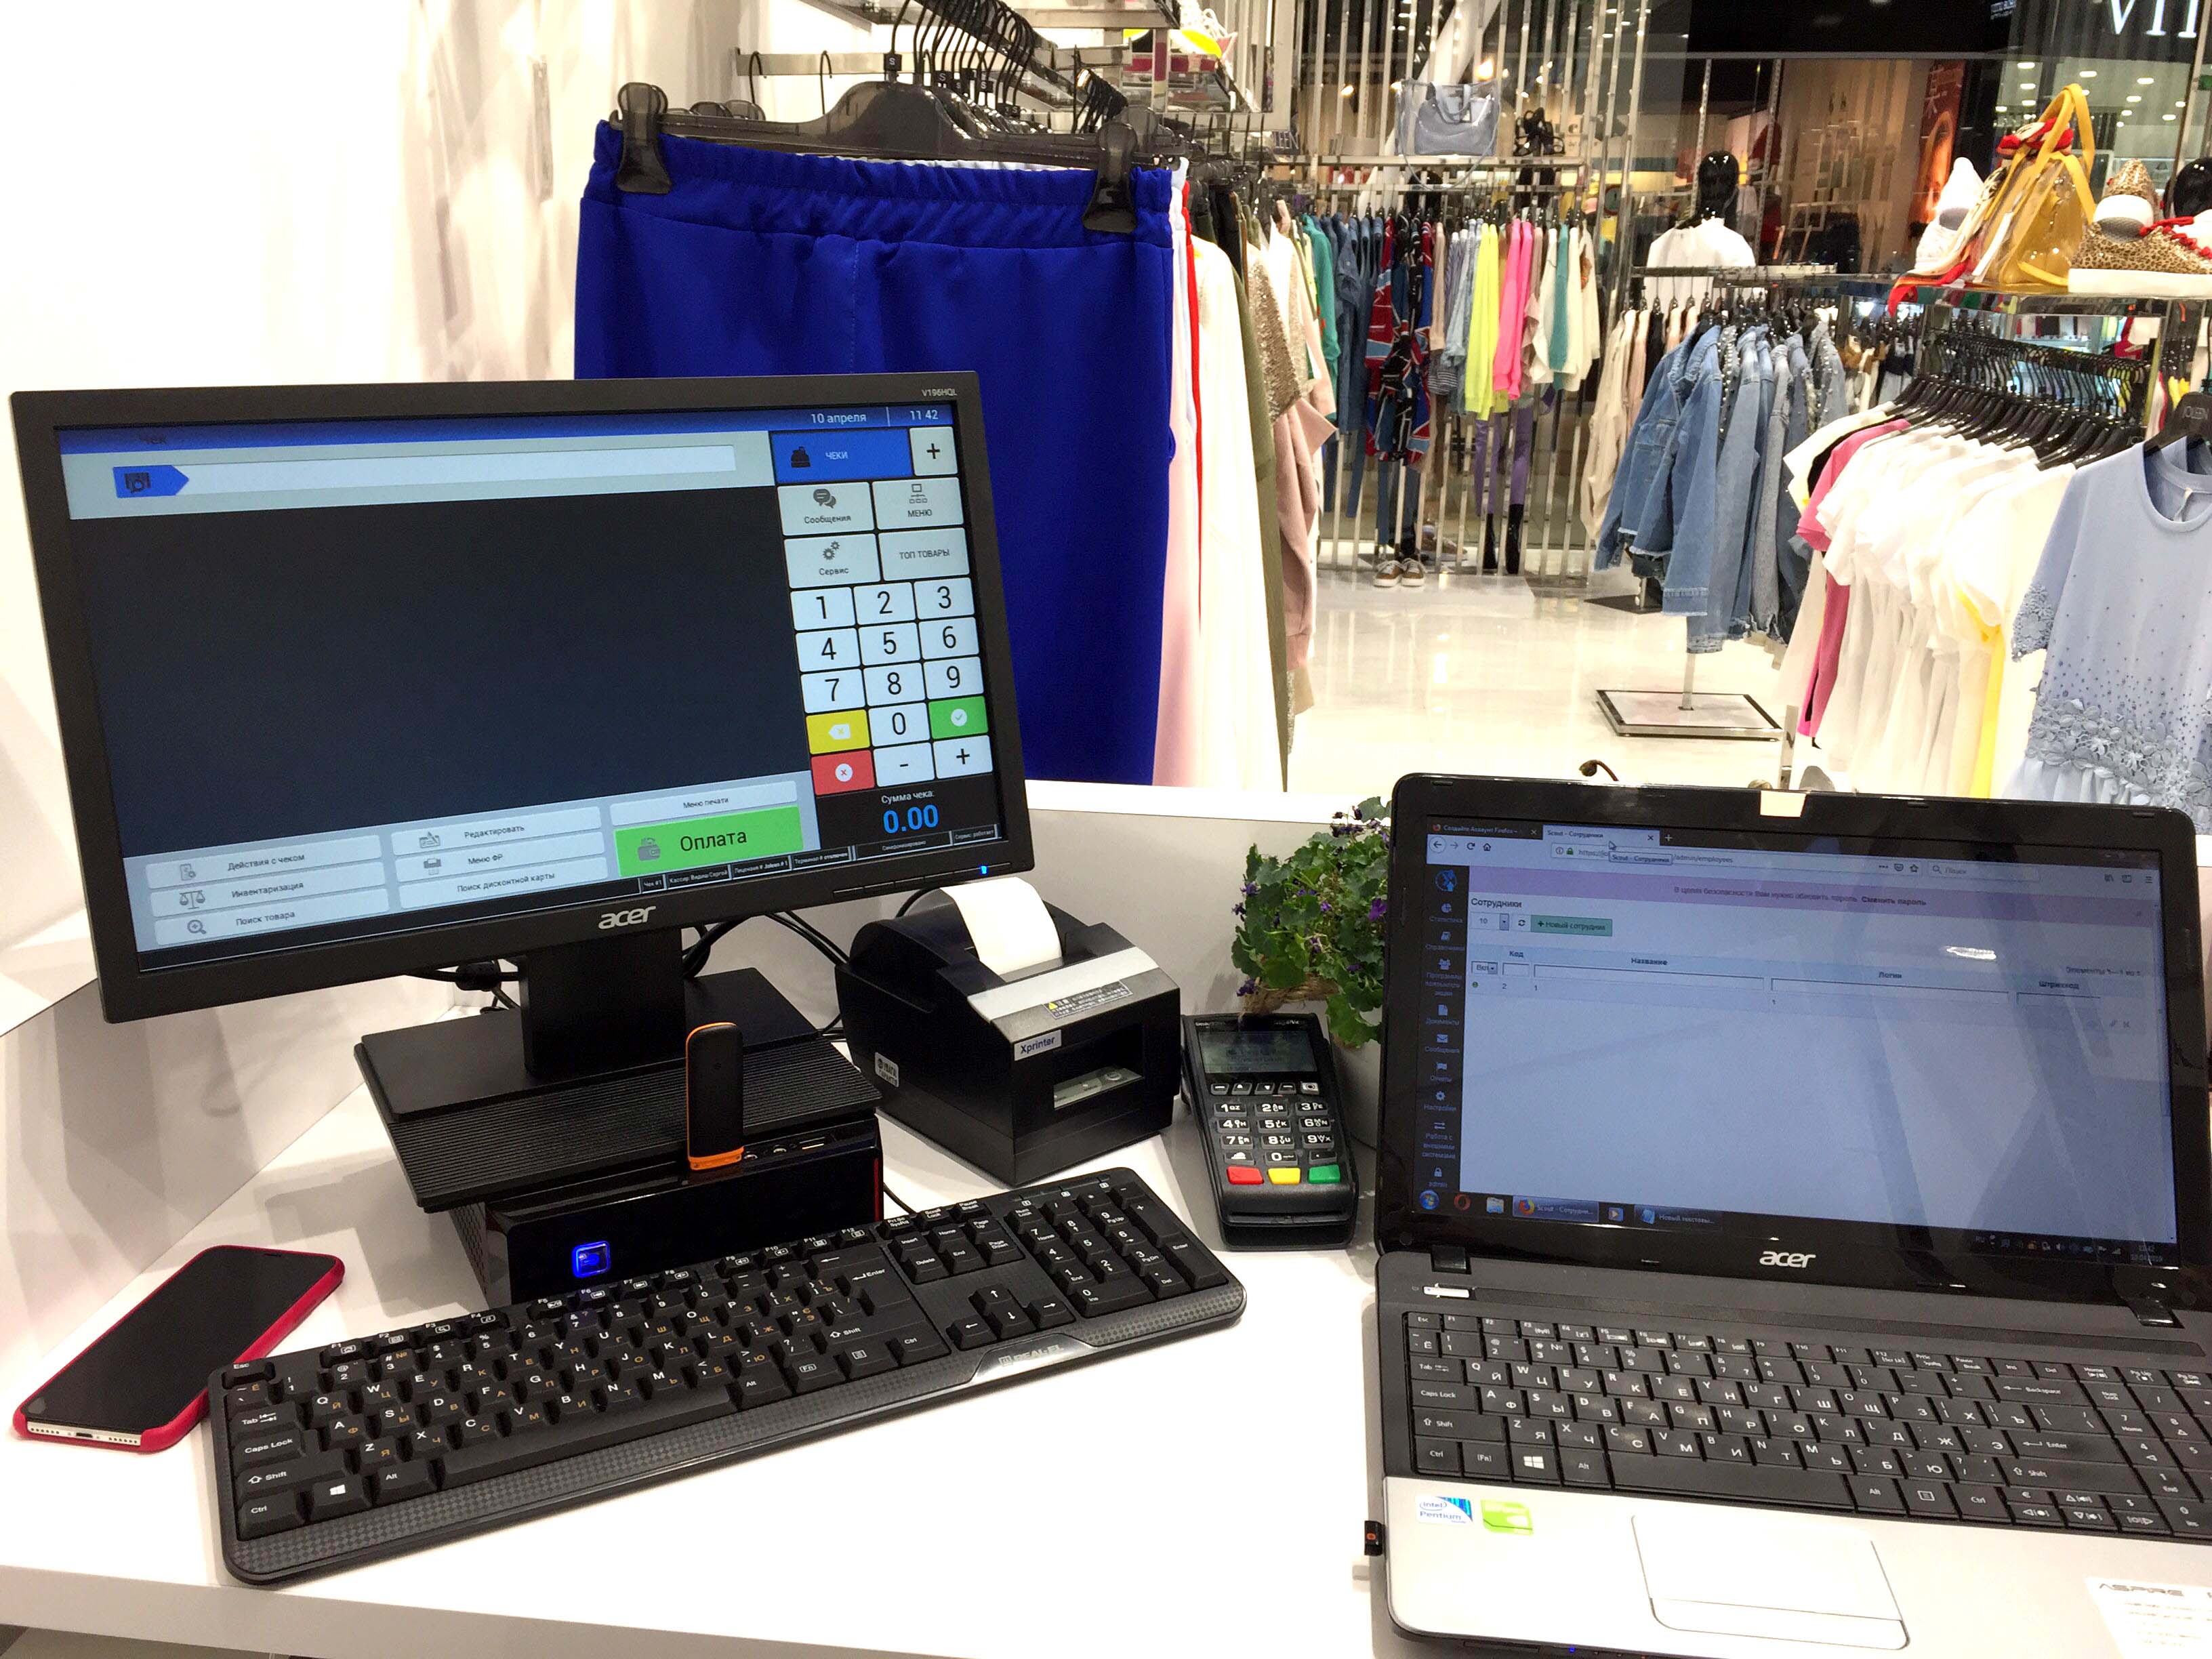 Так виглядає робоче місце продавця магазину одягу автоматизоване за допомогою POS-системи Chameleon POS